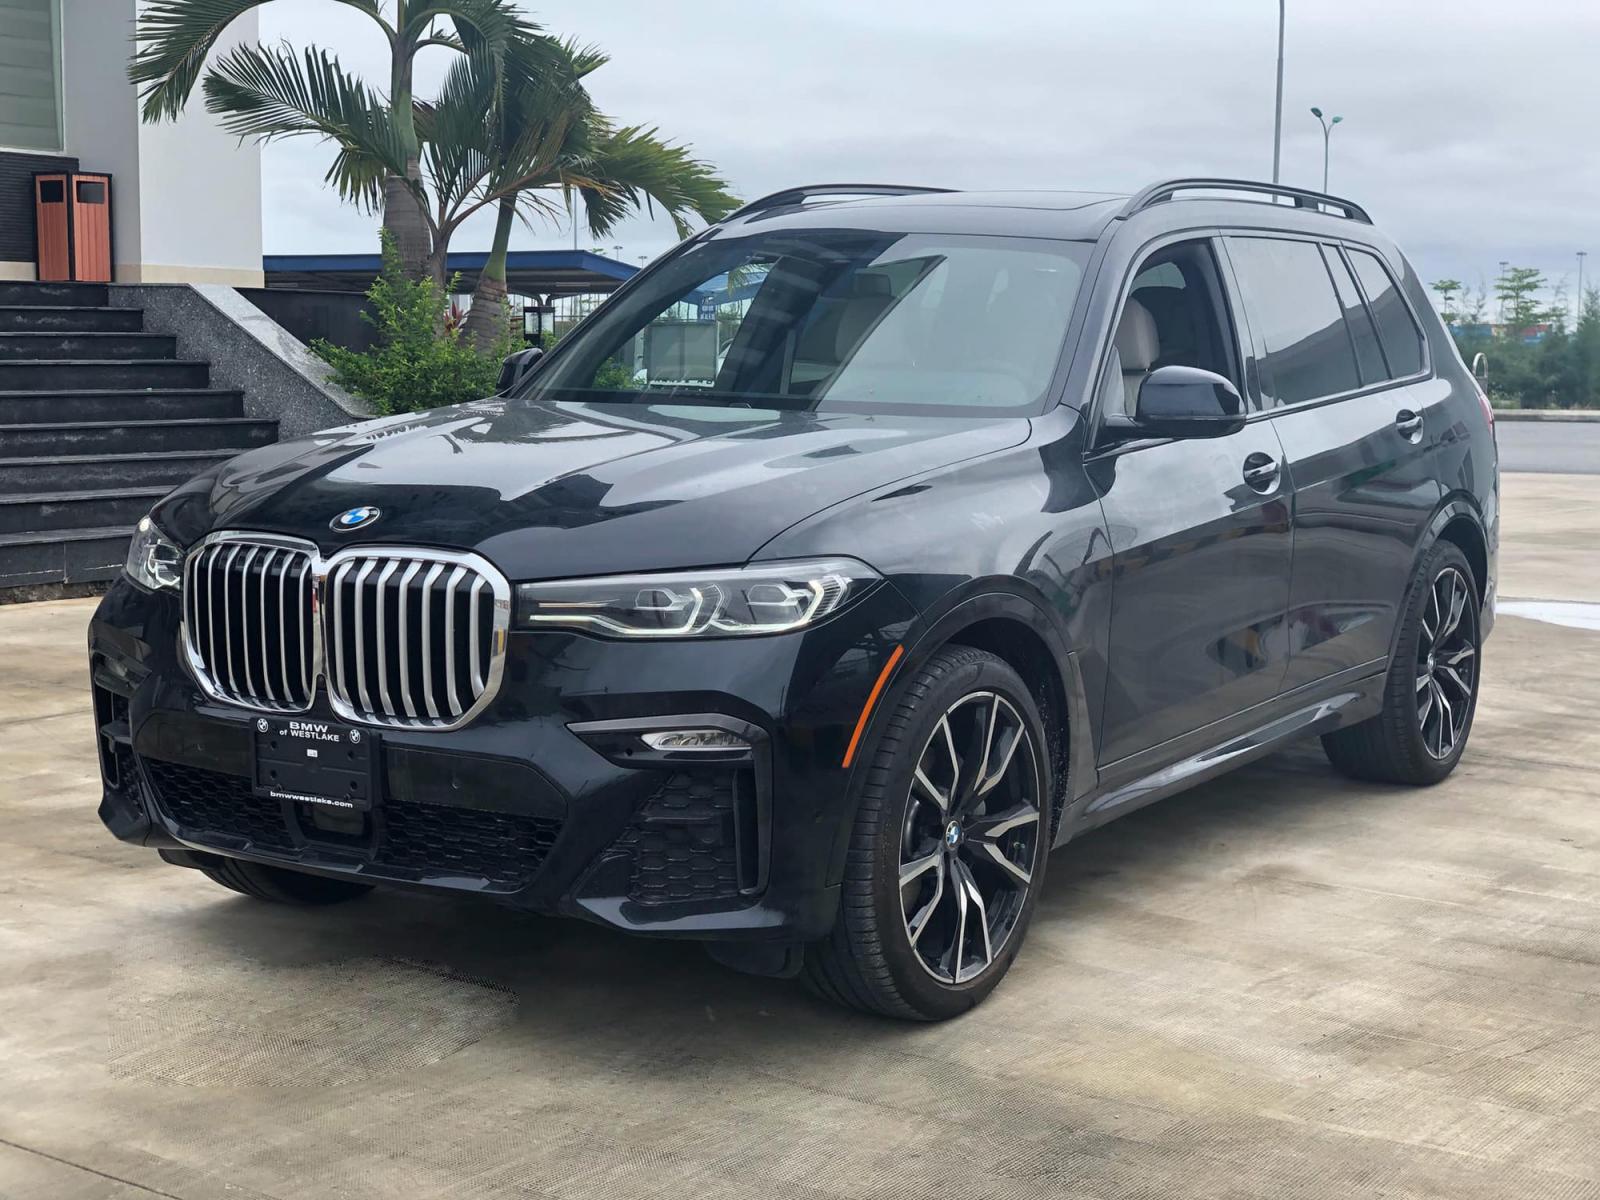 BMW X7 2019 đầu tiên về Việt Nam, giá khoảng 7 tỷ đồng